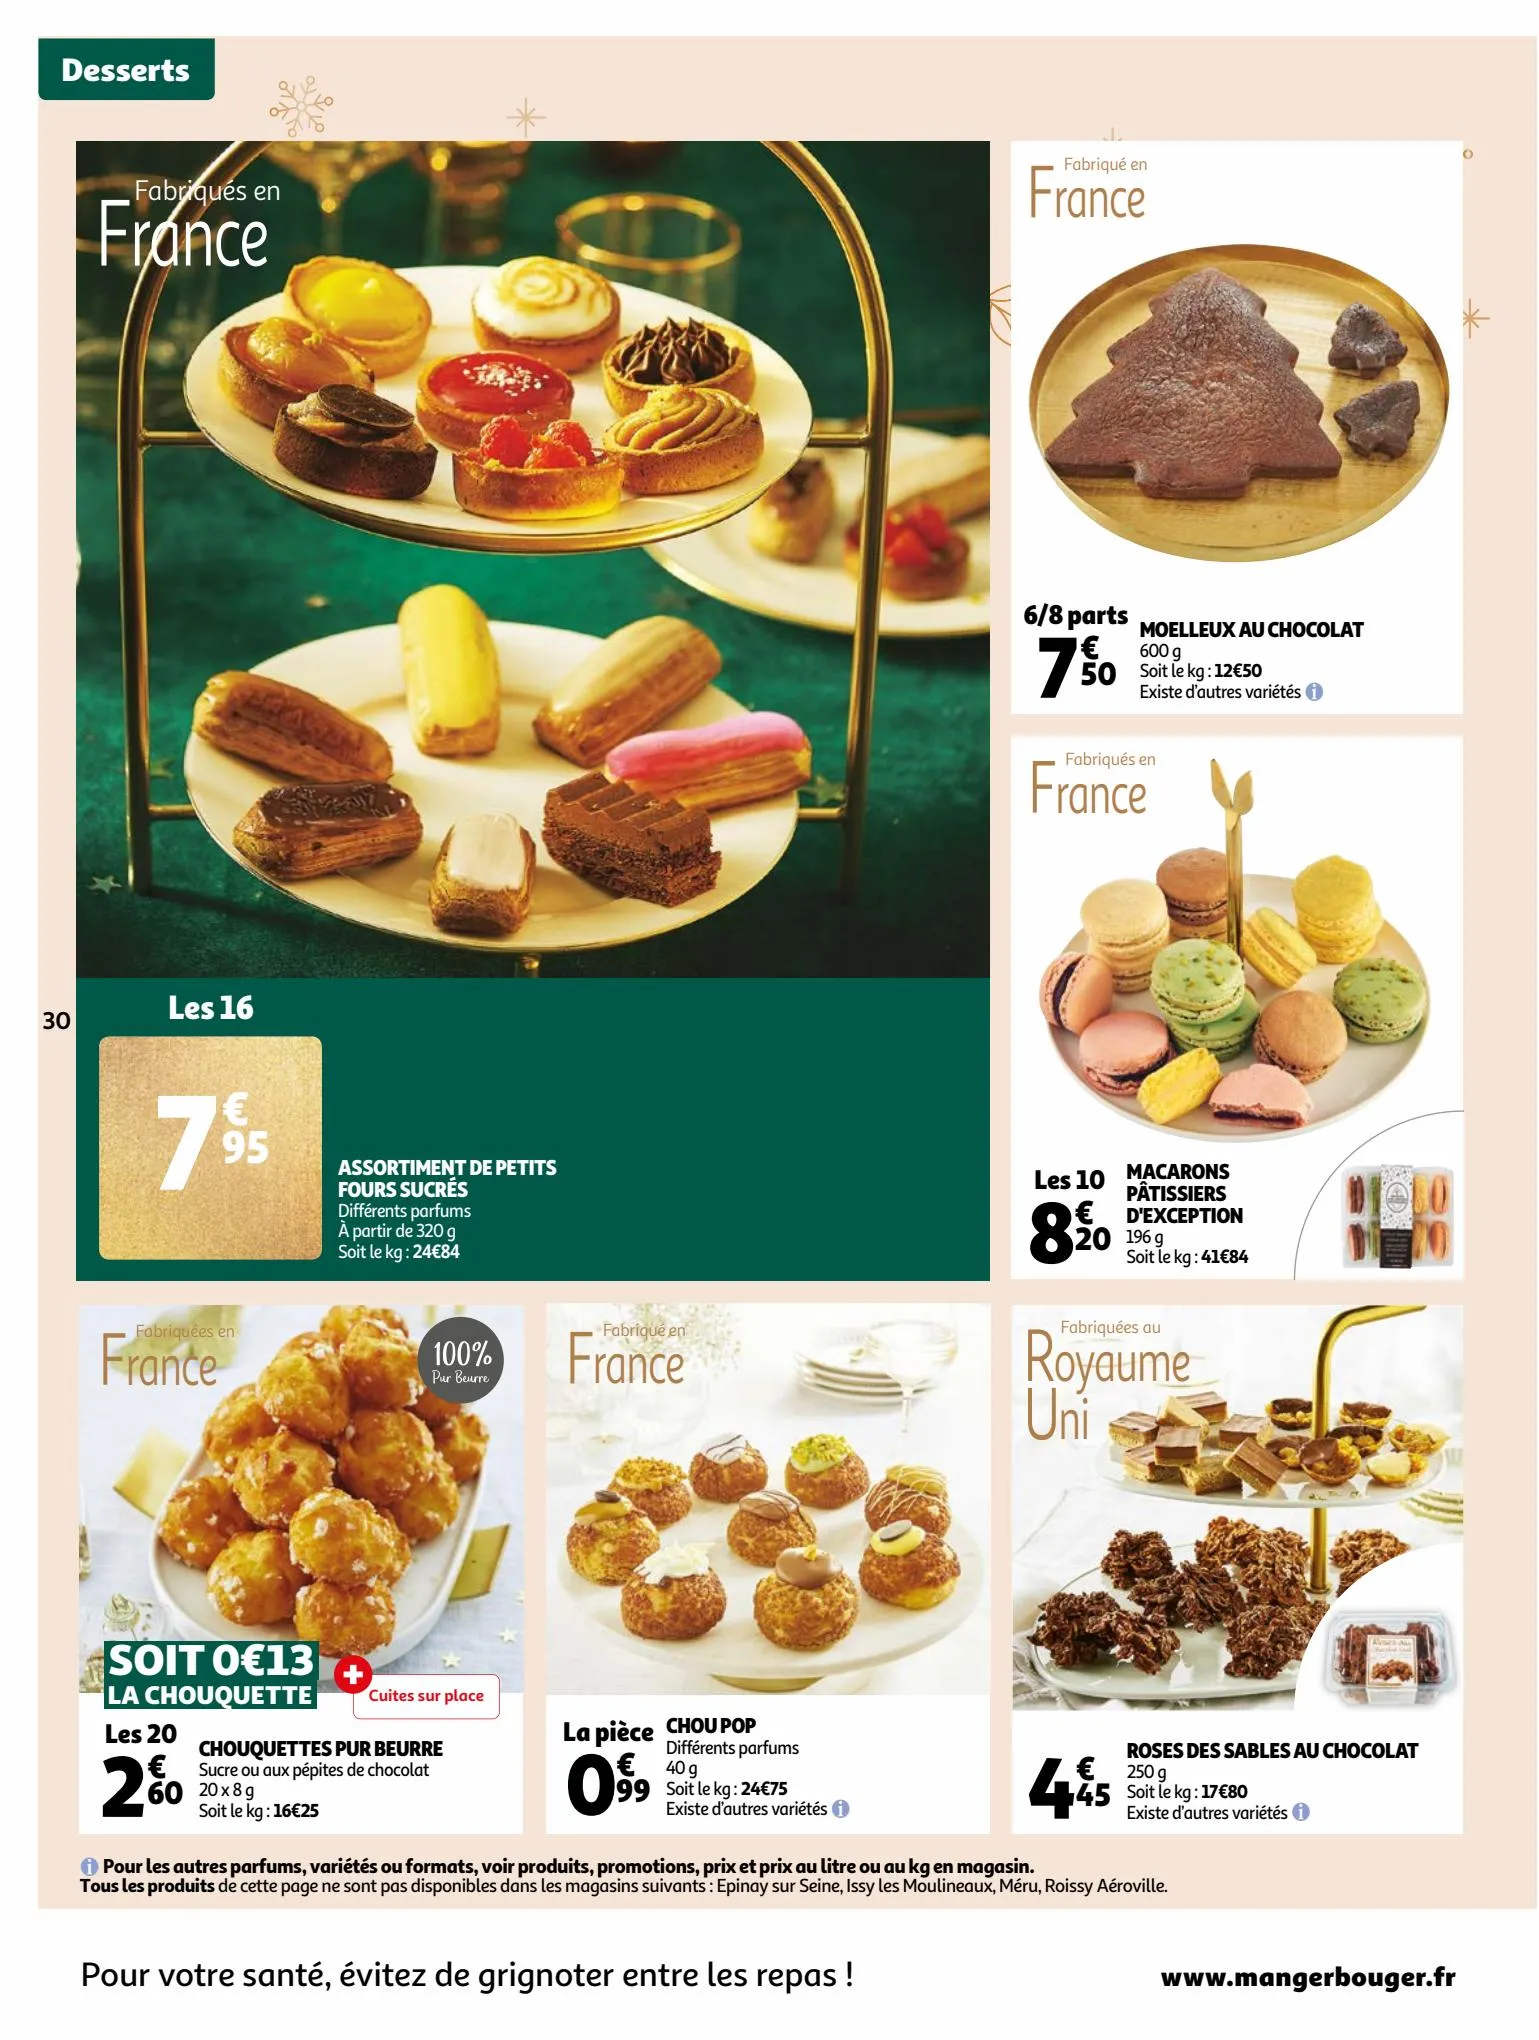 Catalogue Guide gastronomique, page 00030